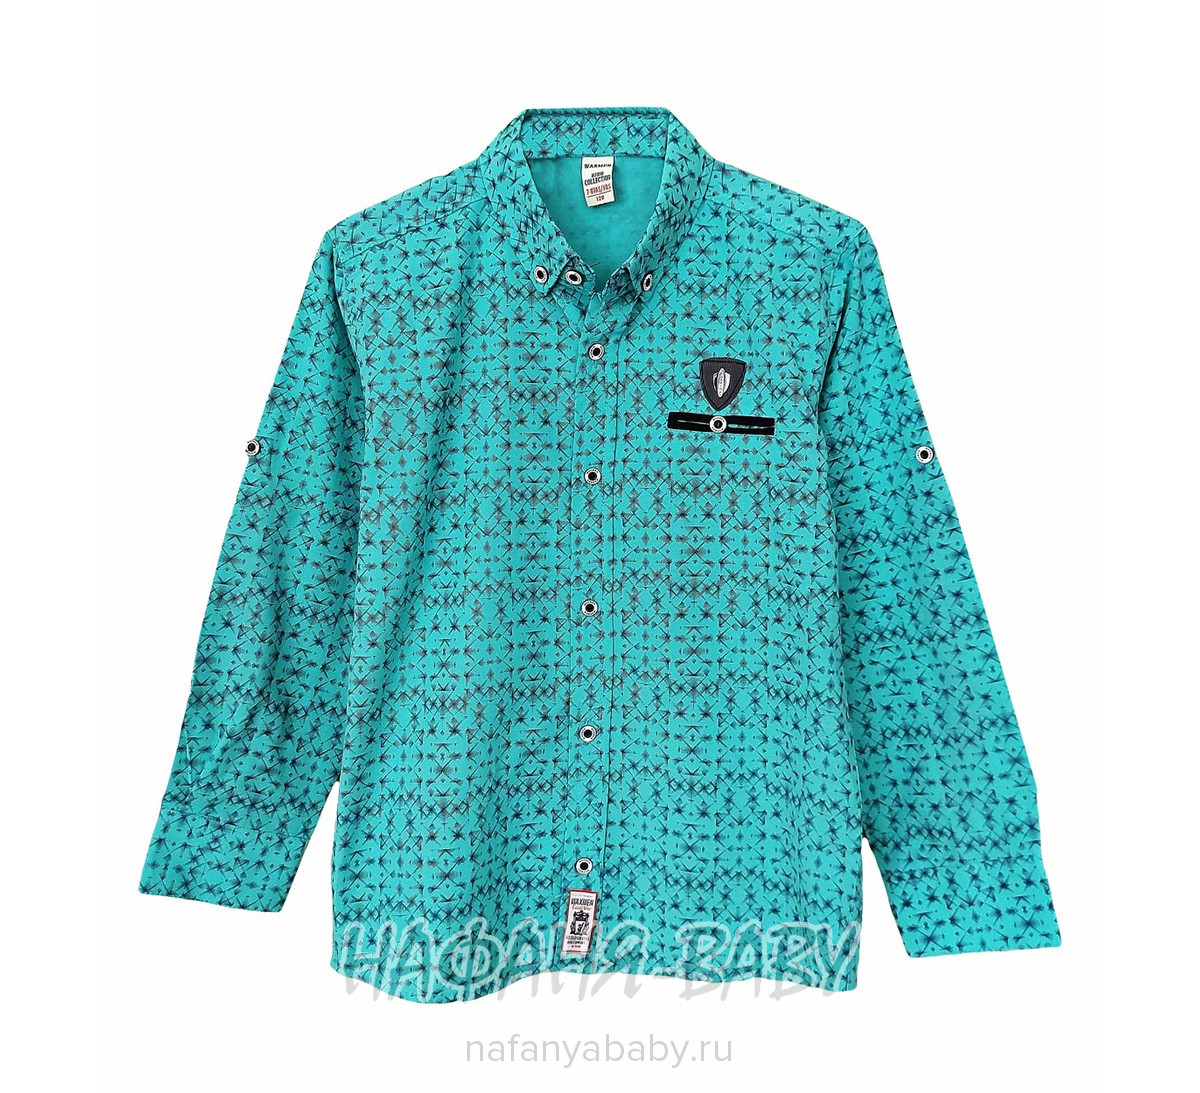 Детская рубашка с длинным рукавом WAXMEN, купить в интернет магазине Нафаня. арт: 5123, цвет бирюзовый